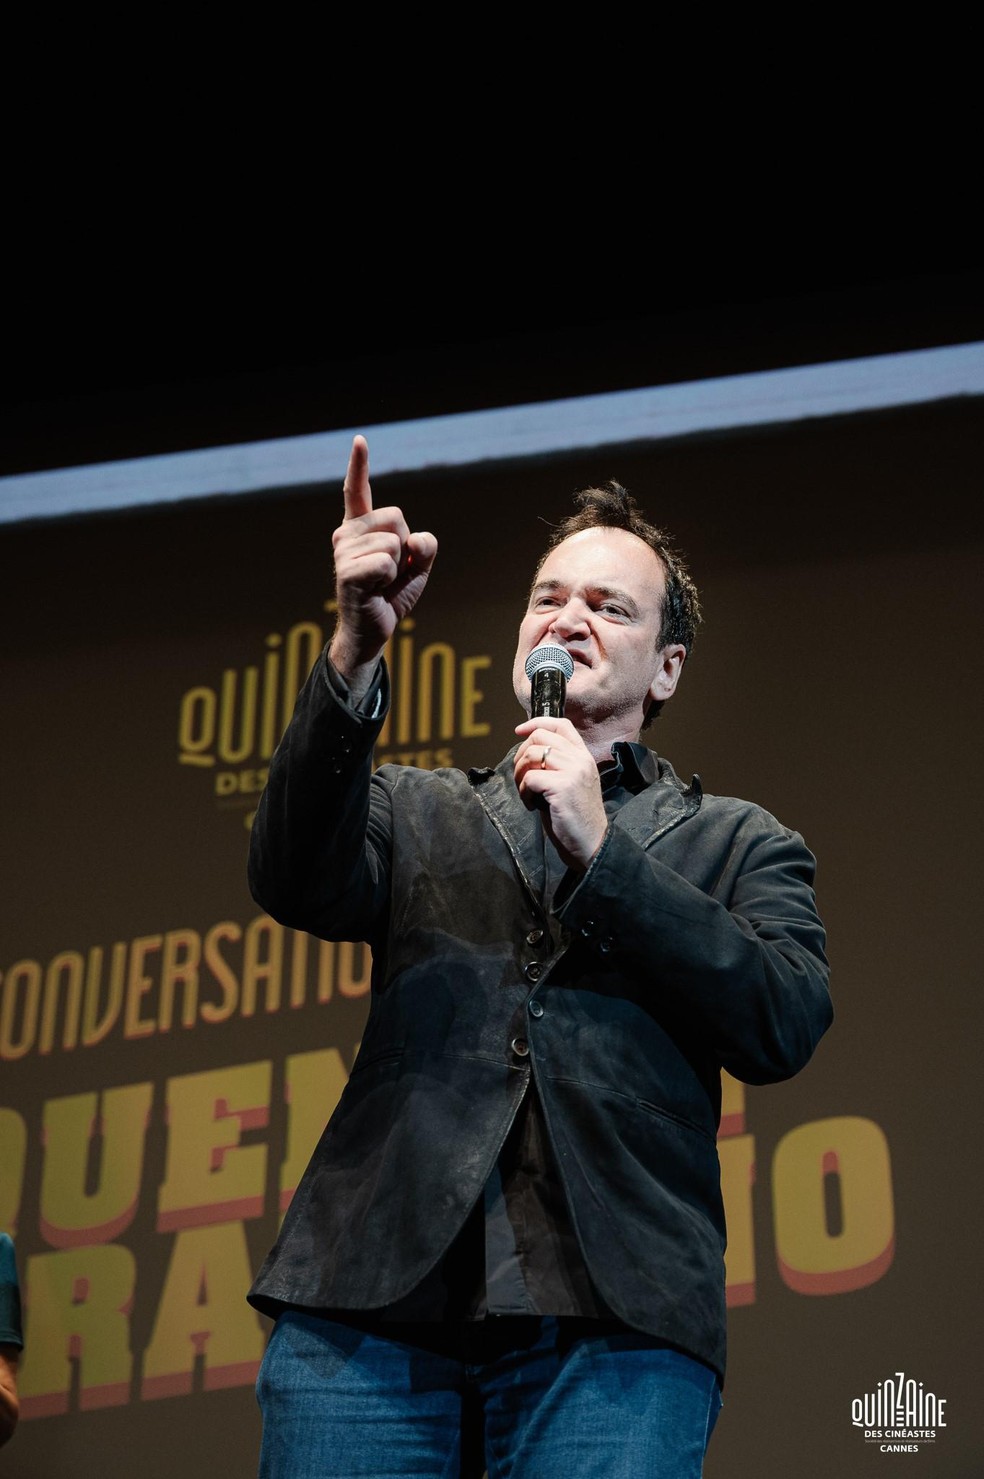 Em livro, Quentin Tarantino destaca admiração por cineastas como Brian De Palma e Don Siegel — Foto: Crédito: Guillaume Lutz/Divulgação/Quinzaine des Realizateurs